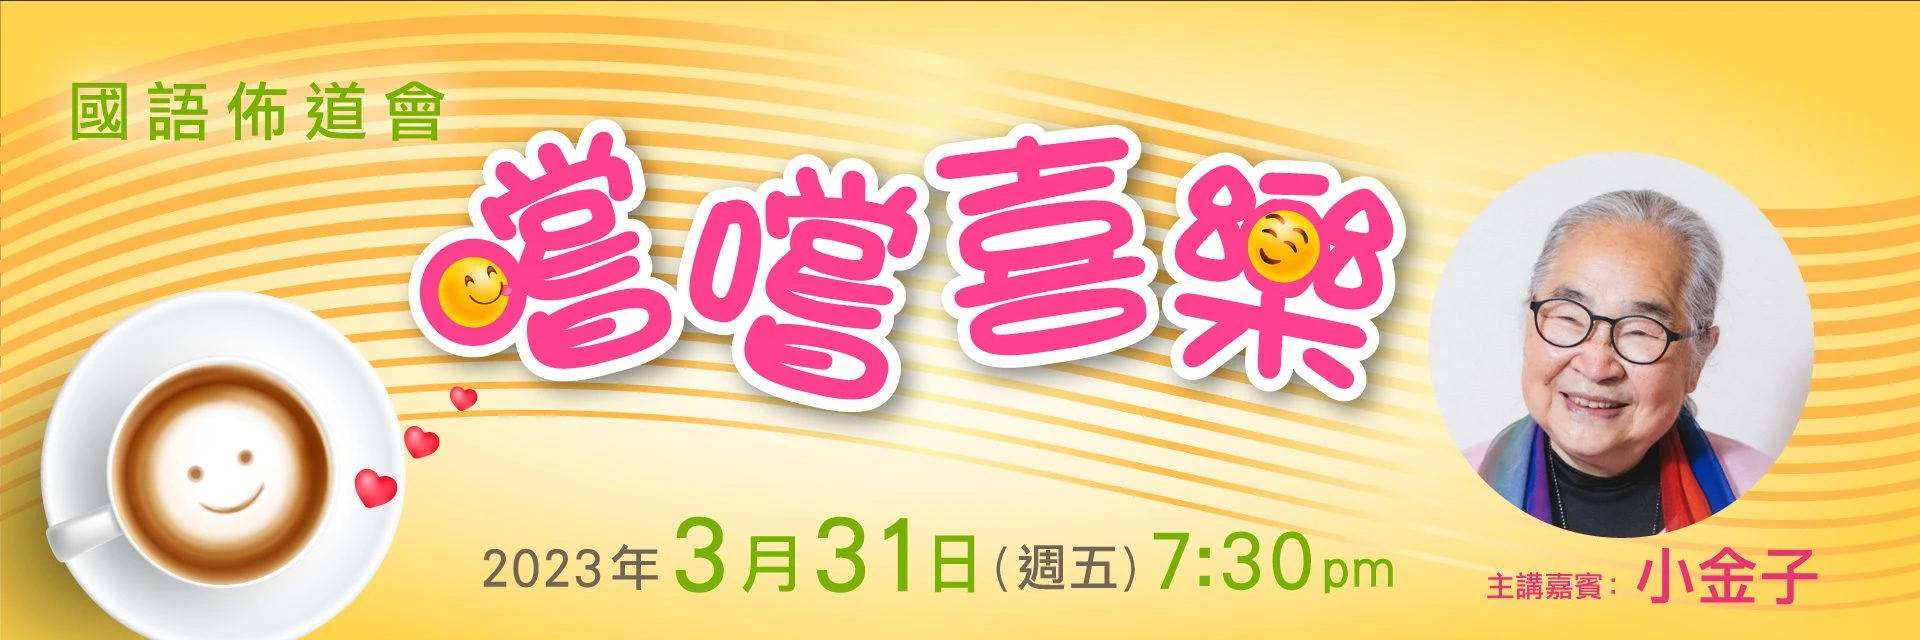 【「嚐嚐喜樂」國語佈道會】2023年3月31日